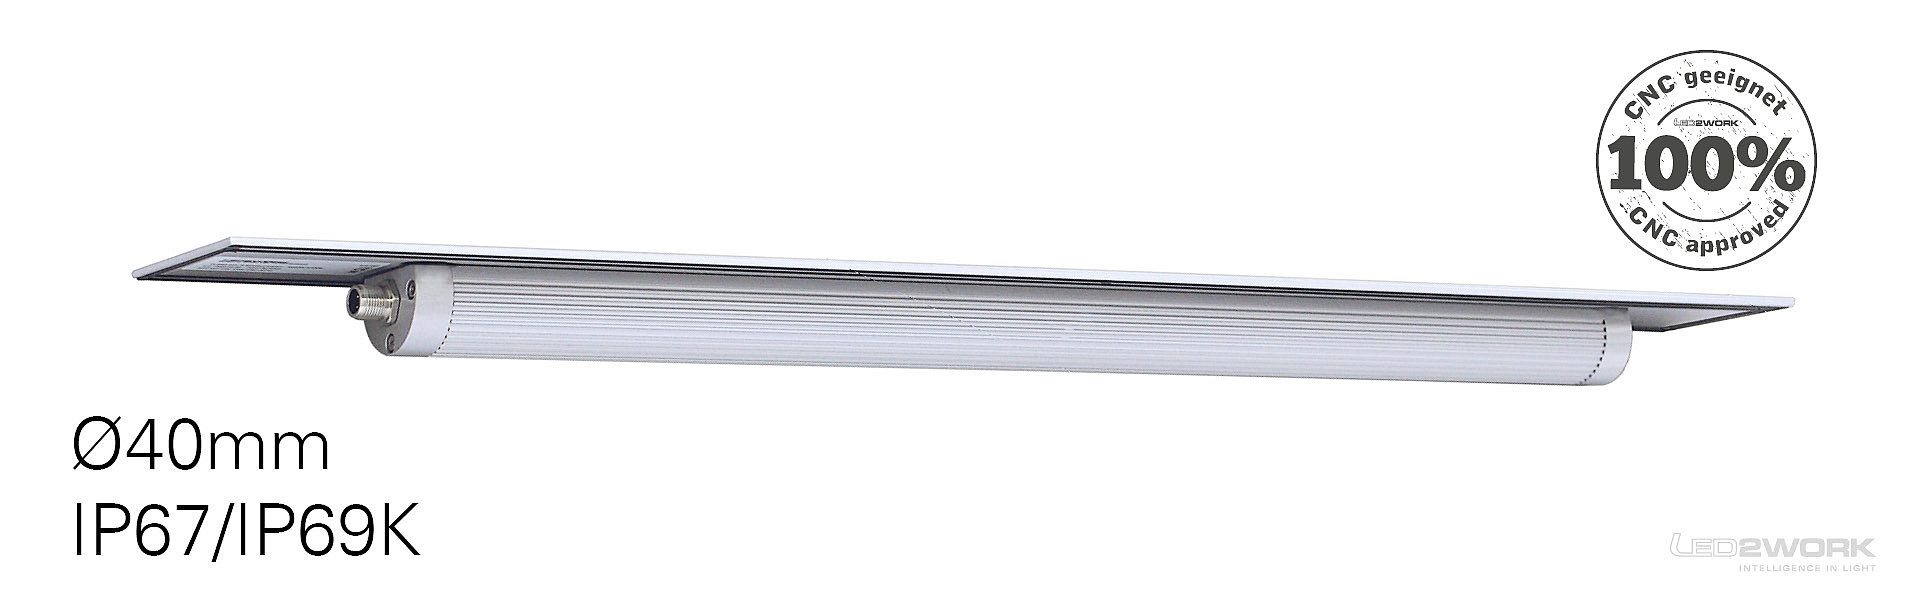 Luminaria para máquinas LED2WORK TUBELED_40 II Integrada con alto grado de protección IP67/IP69K